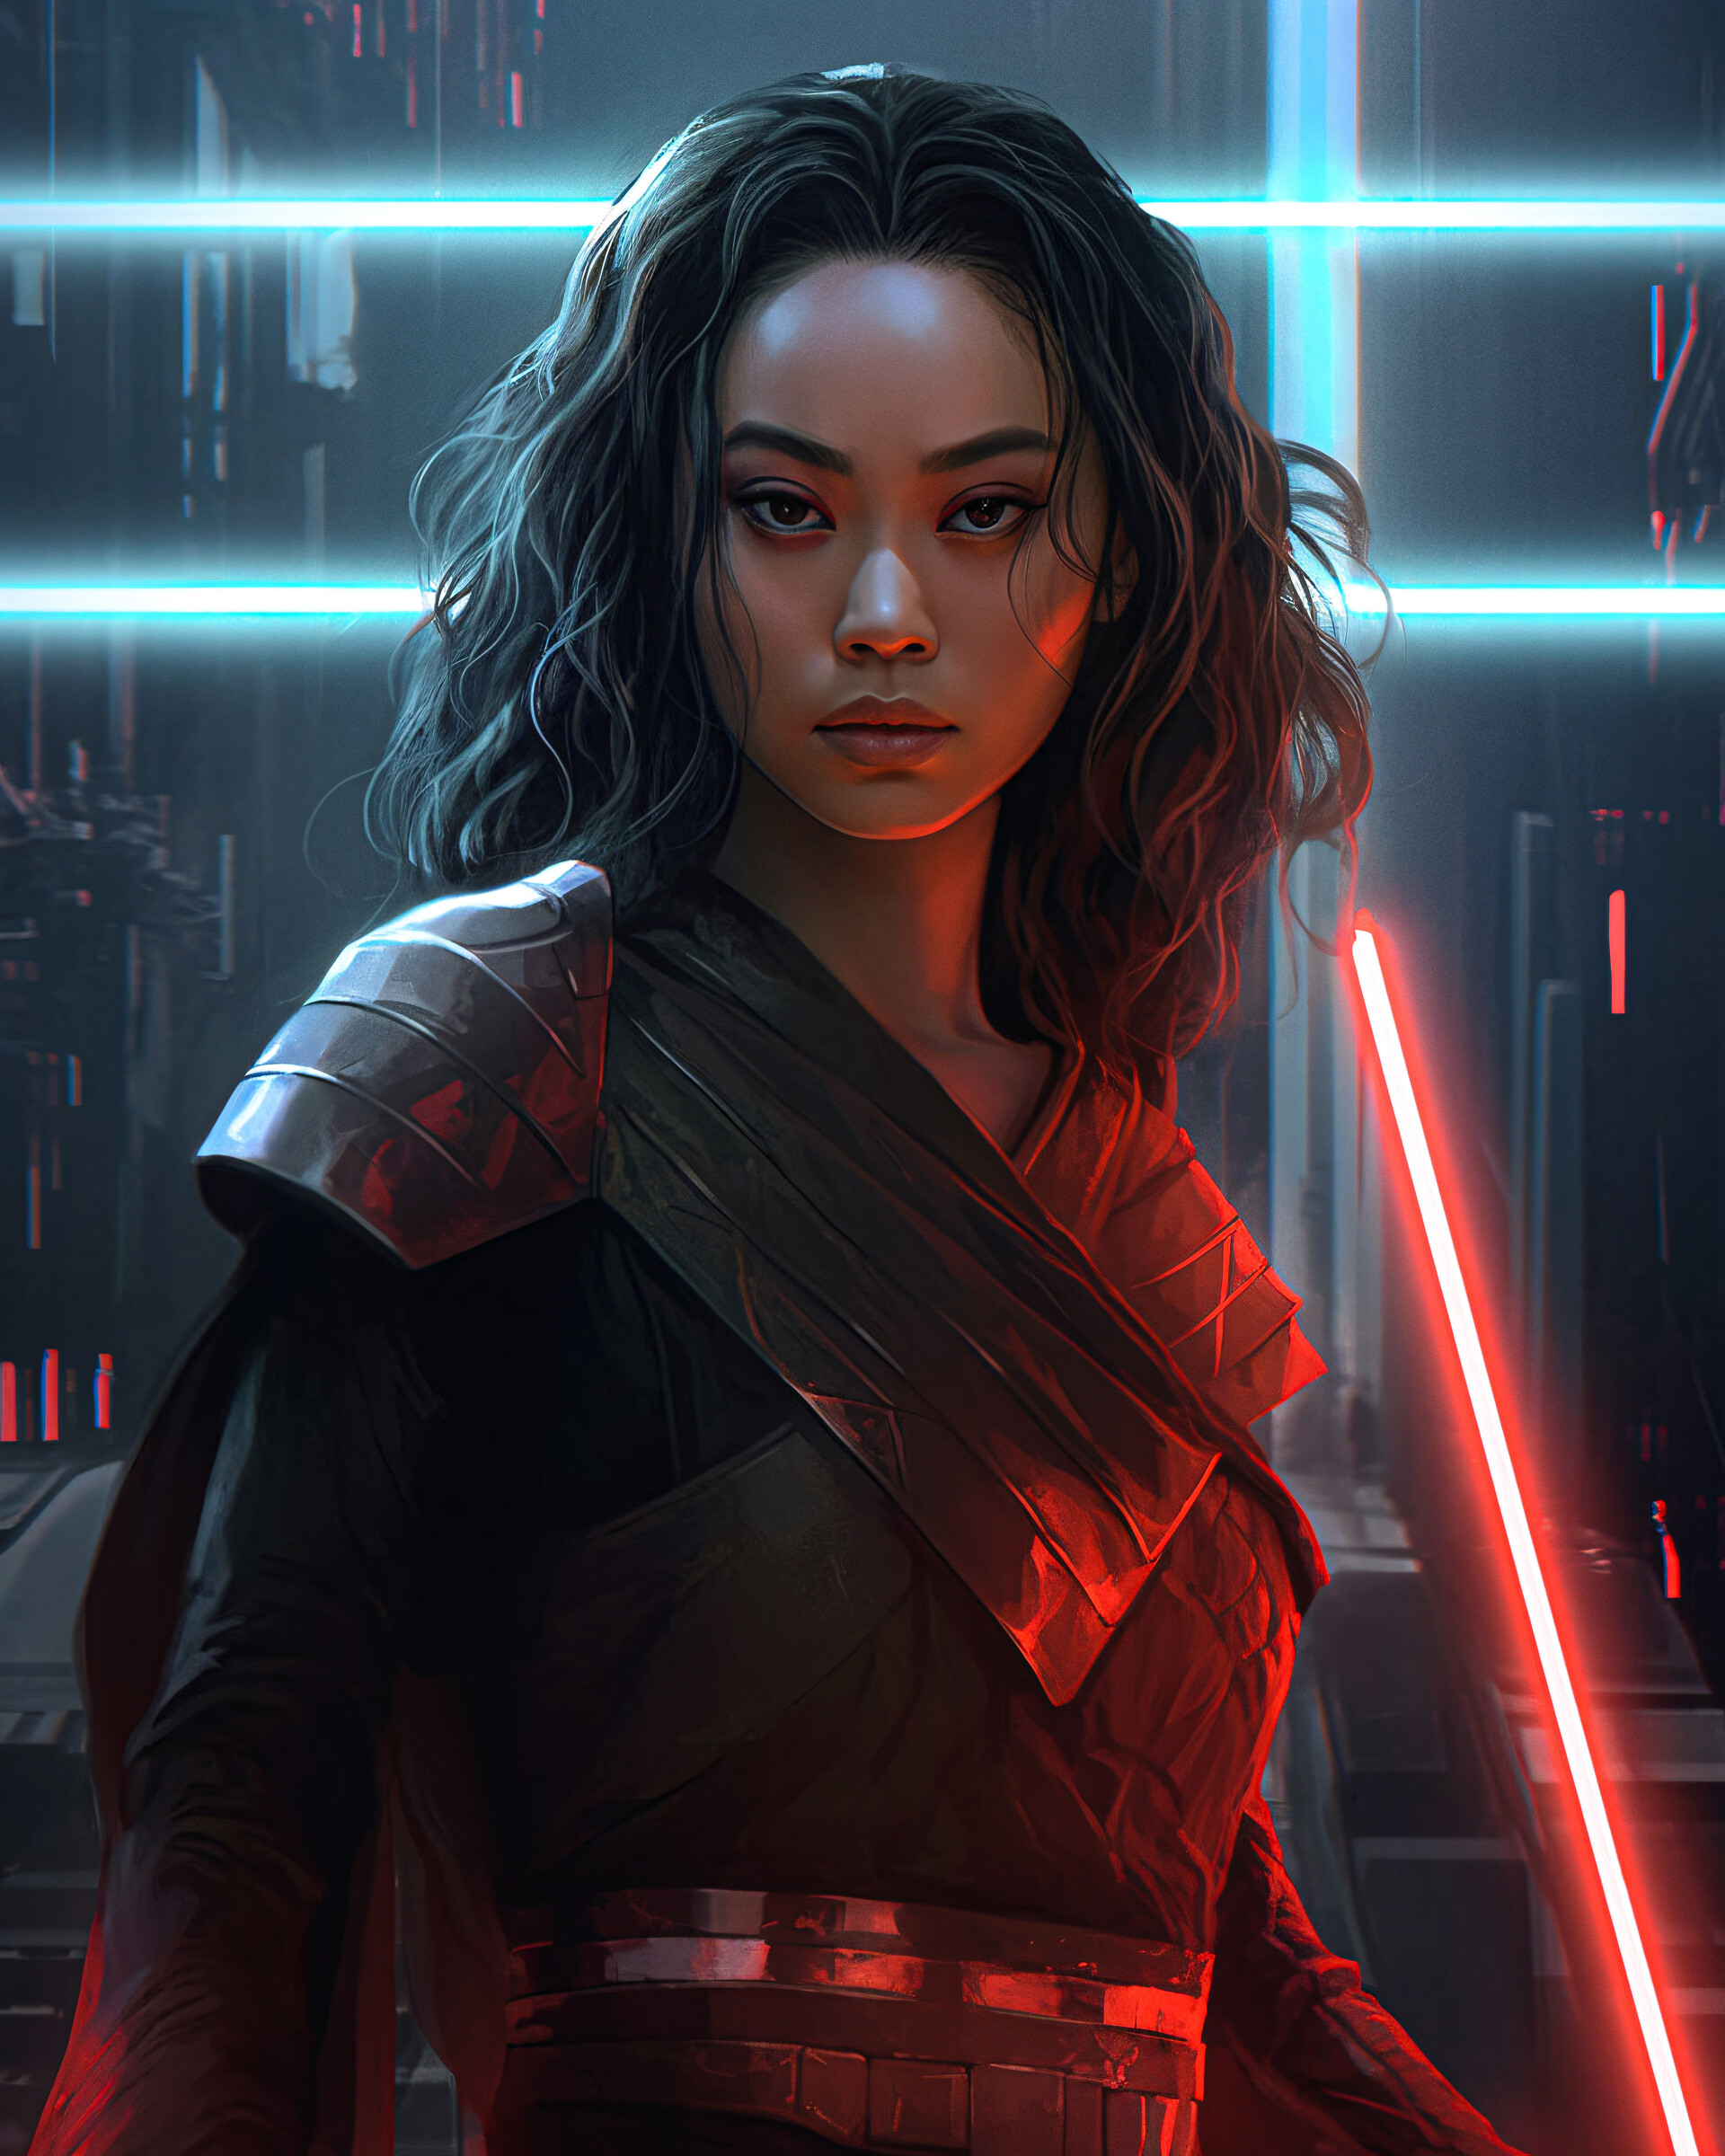 ArtStation - Female Jedi Character Design